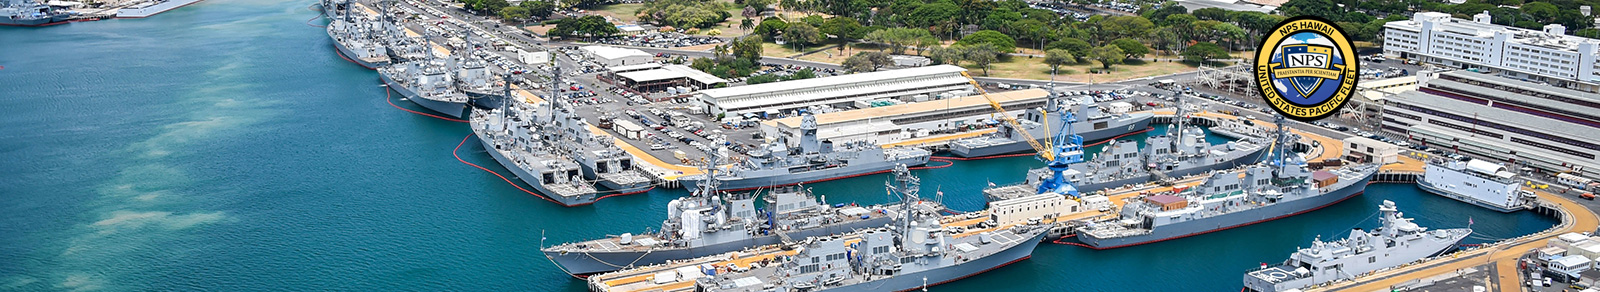 Ships moored at Joint Base Pearl Harbor-Hickam, Hawaii